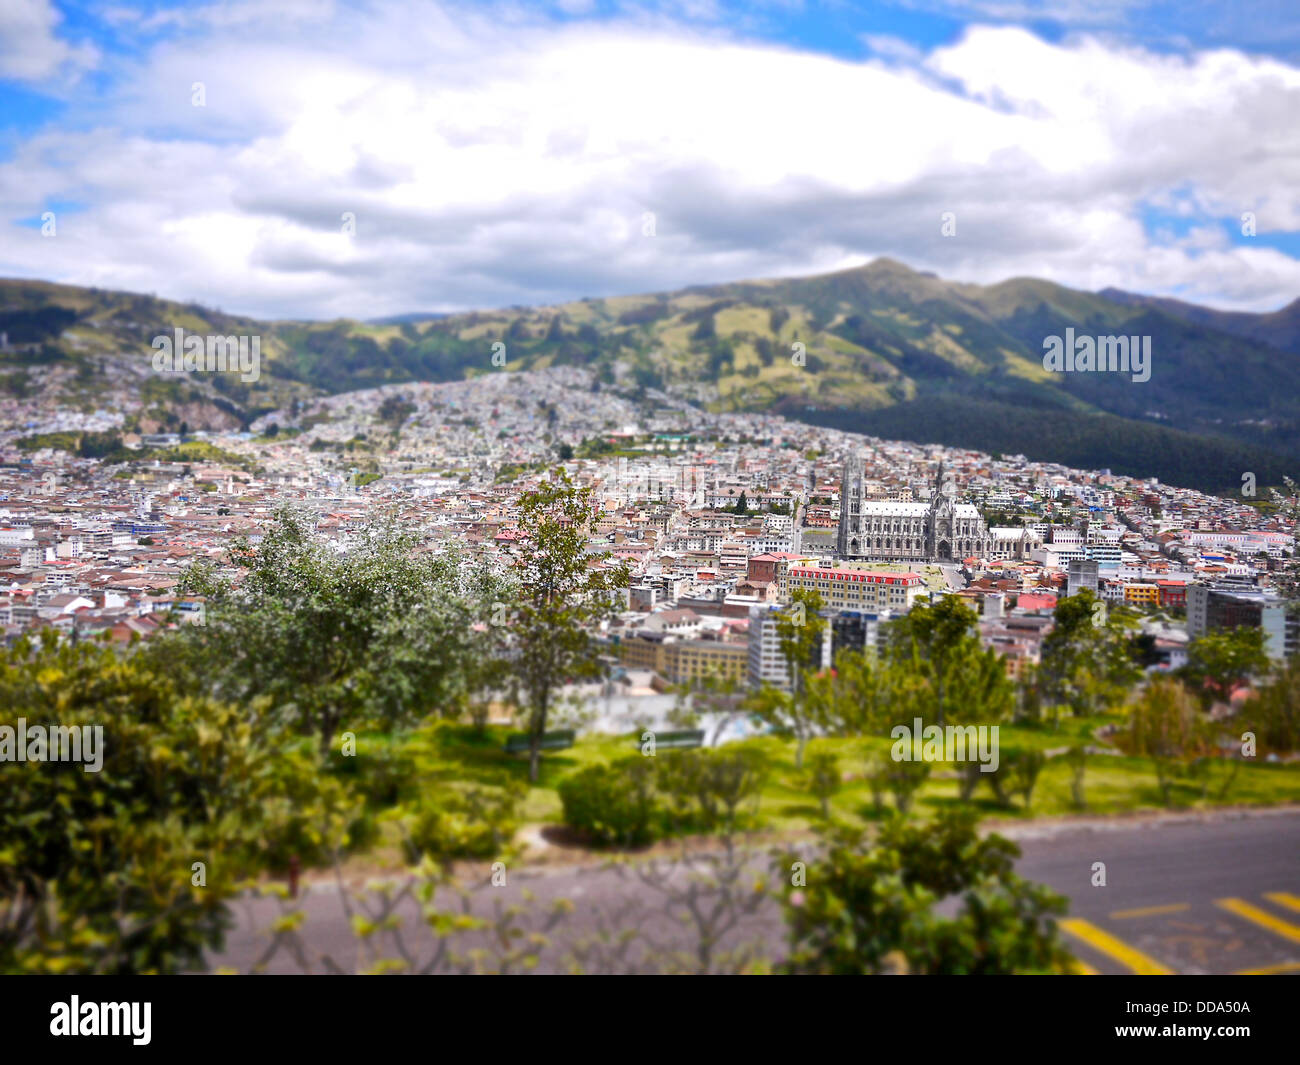 Ein Blick auf die Altstadt Quitos, ein UNESCO-Weltkulturerbe. Stockfoto